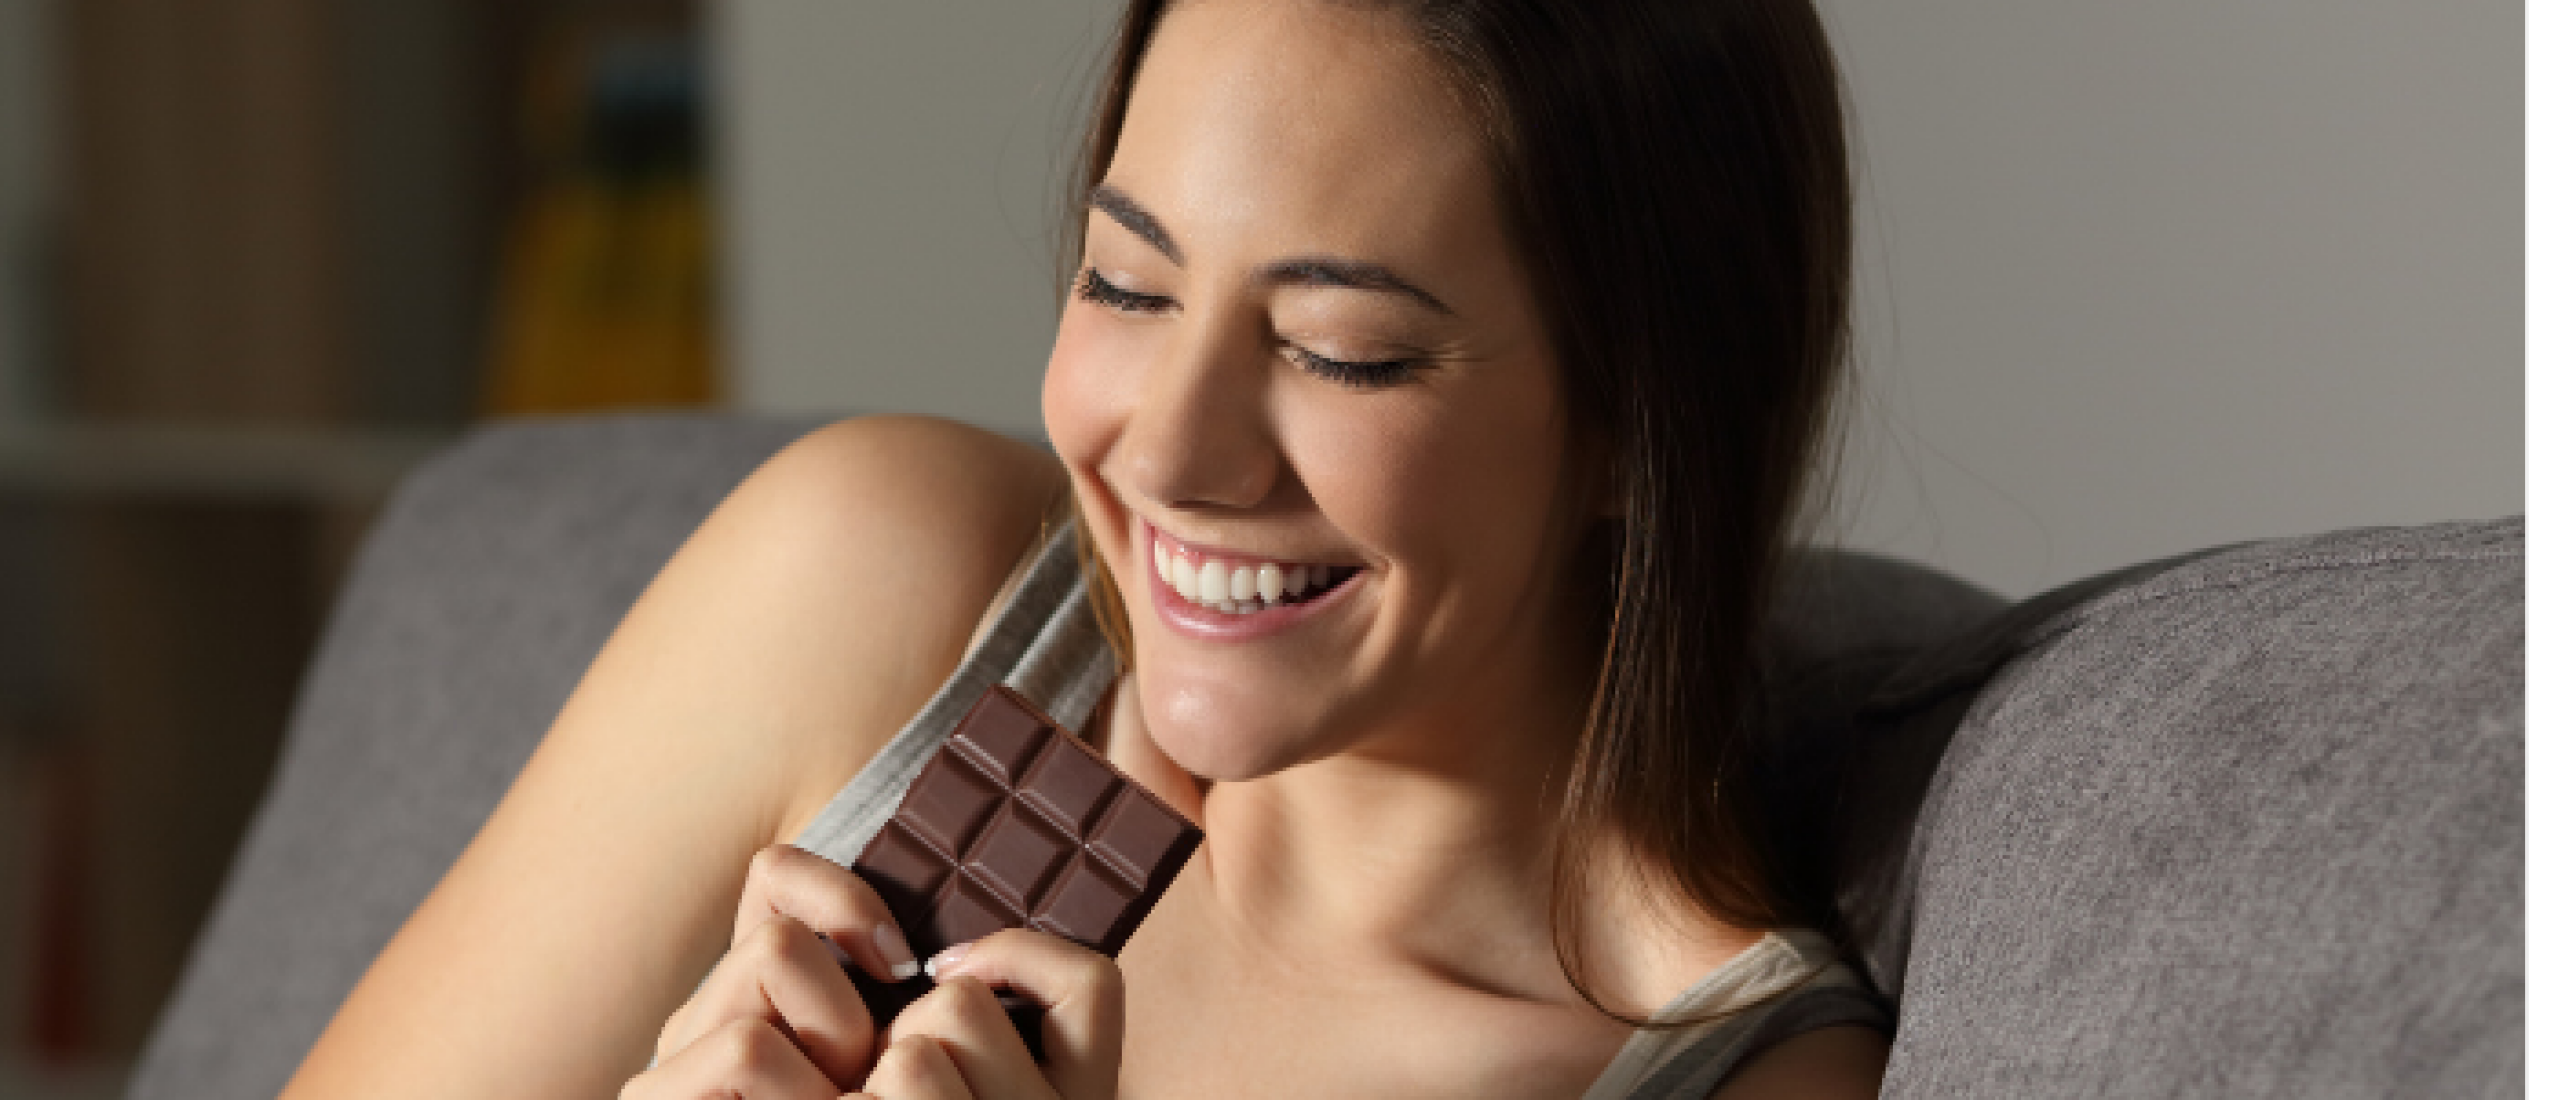 Hands Off My Chocolate introduceert vegan chocoladeletters die makkelijk te breken zijn